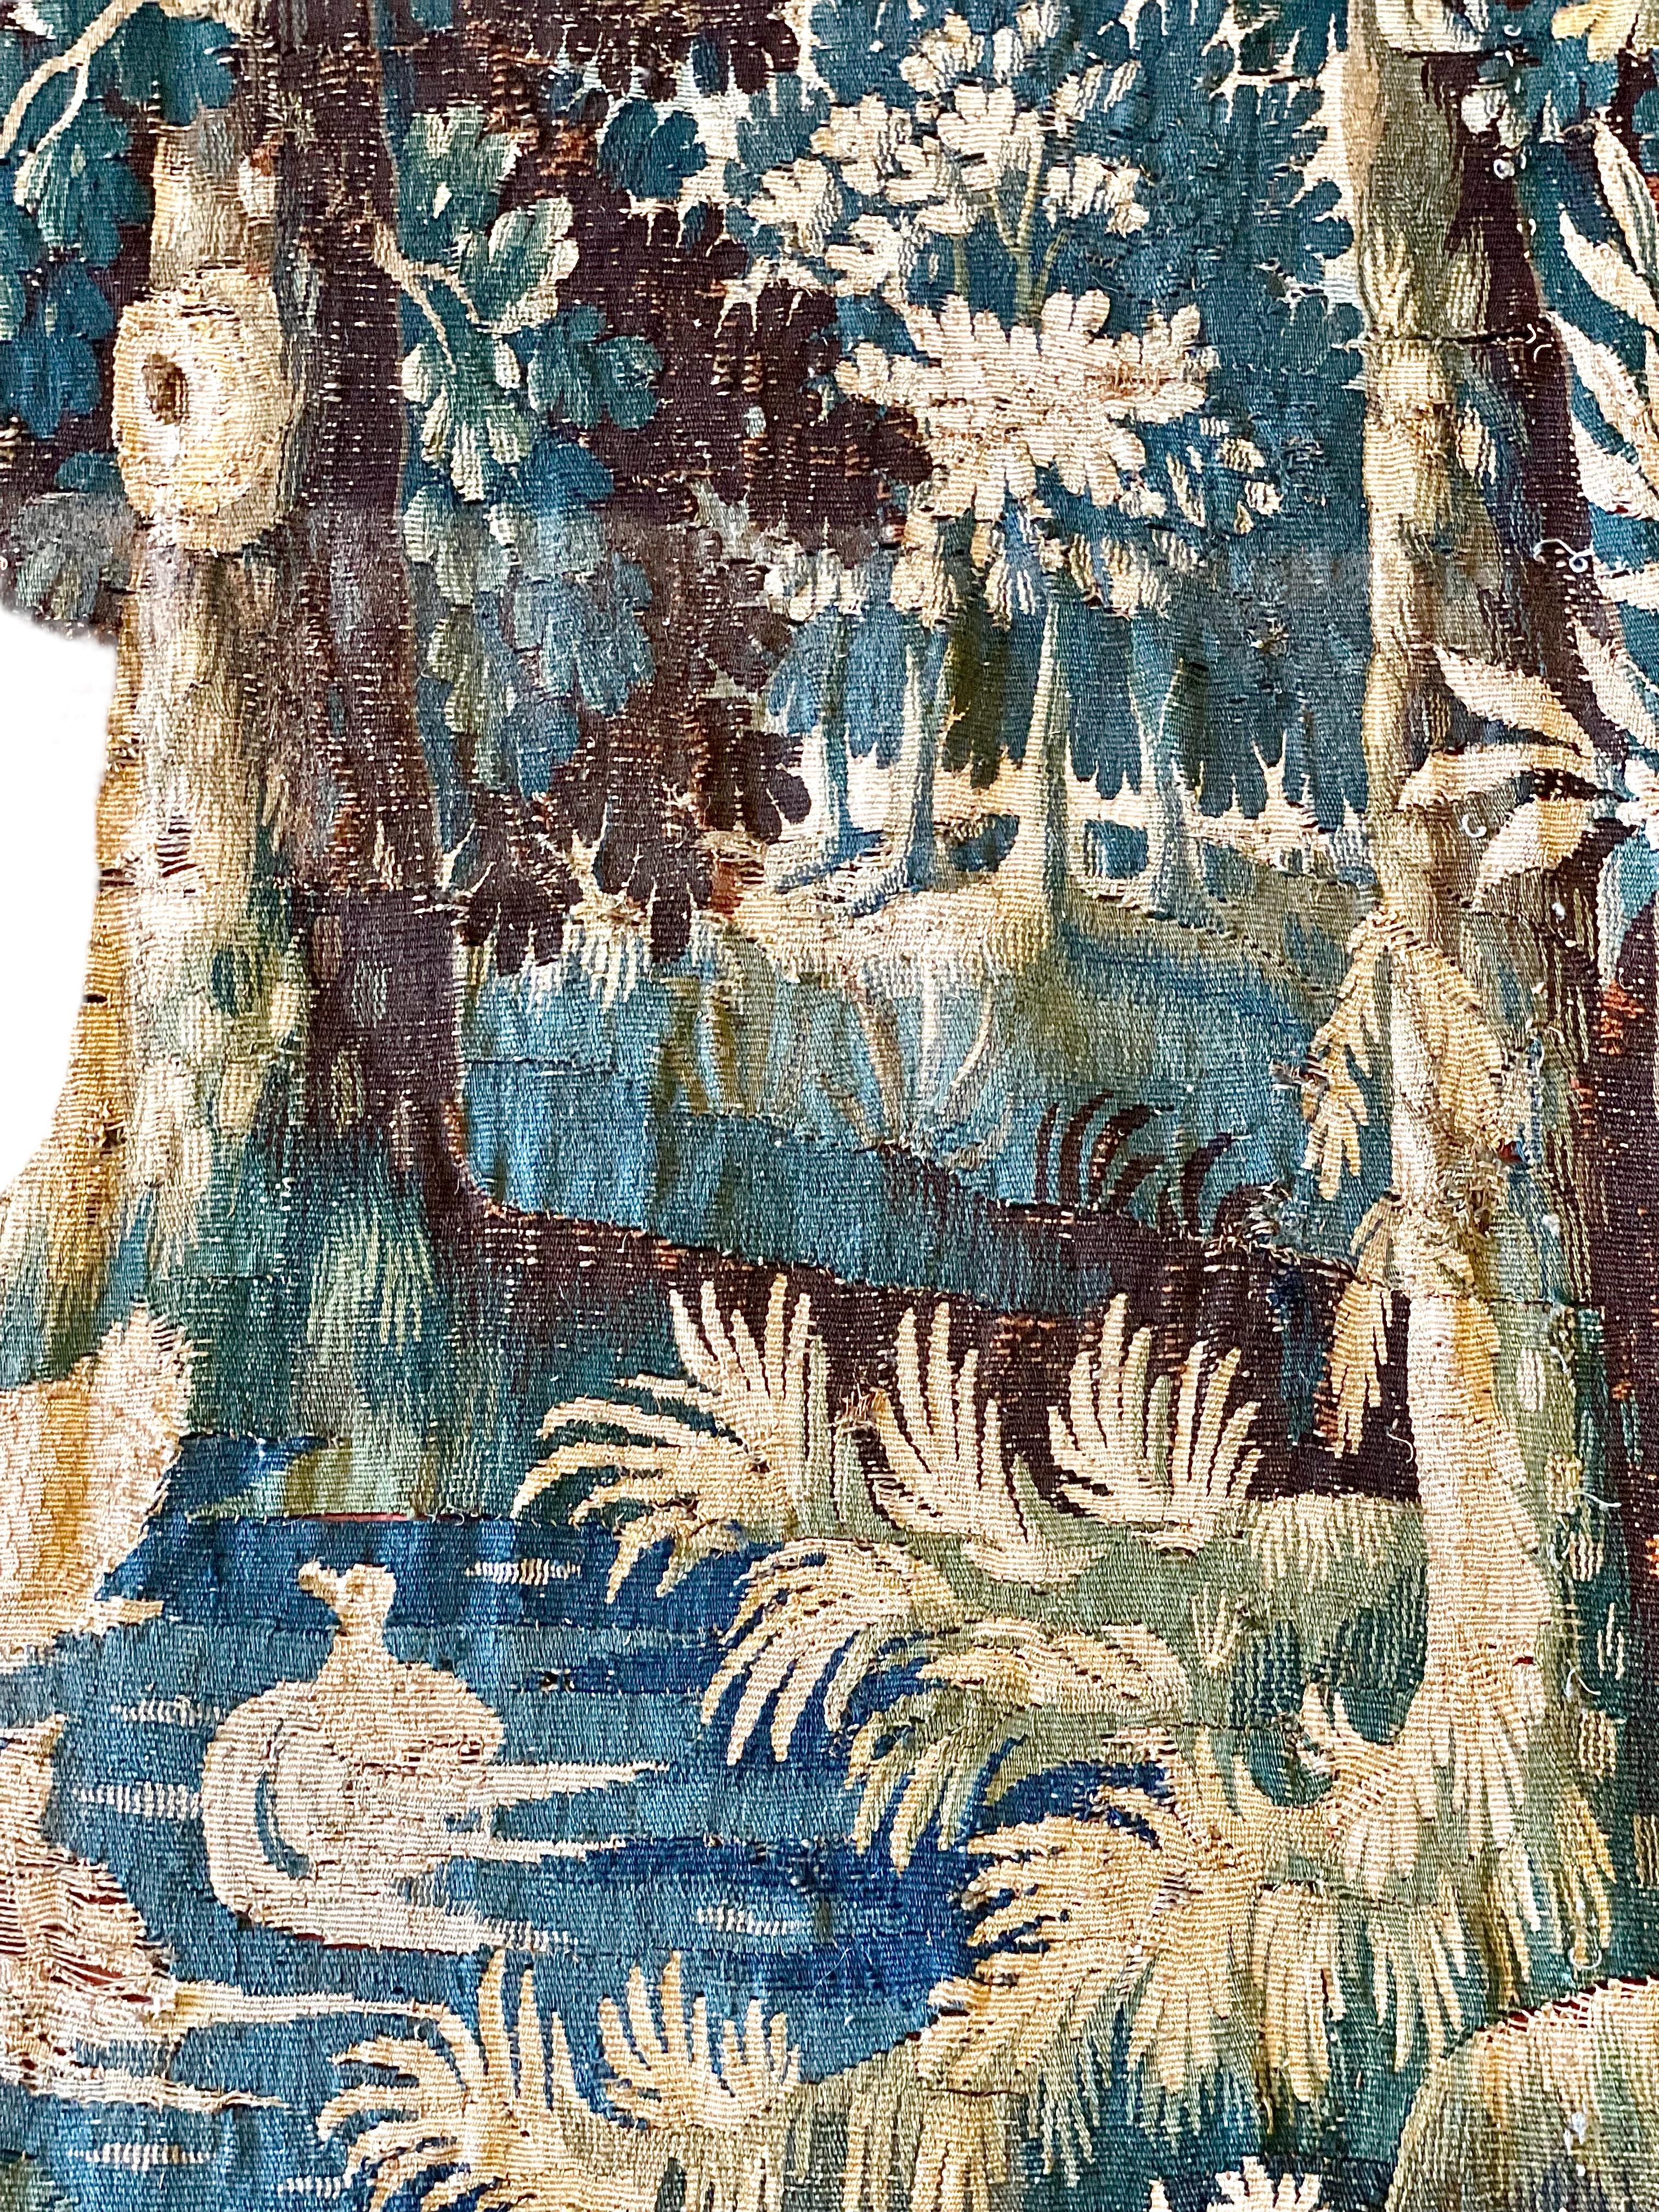 Une luxueuse tapisserie d'Aubusson du XVIIIe siècle, représentant un chien aboyant les oiseaux sur une rivière, dans un paysage typiquement rural et architectural. Tissée à la main en laine, dans des tons à dominante verte et crème avec une bordure